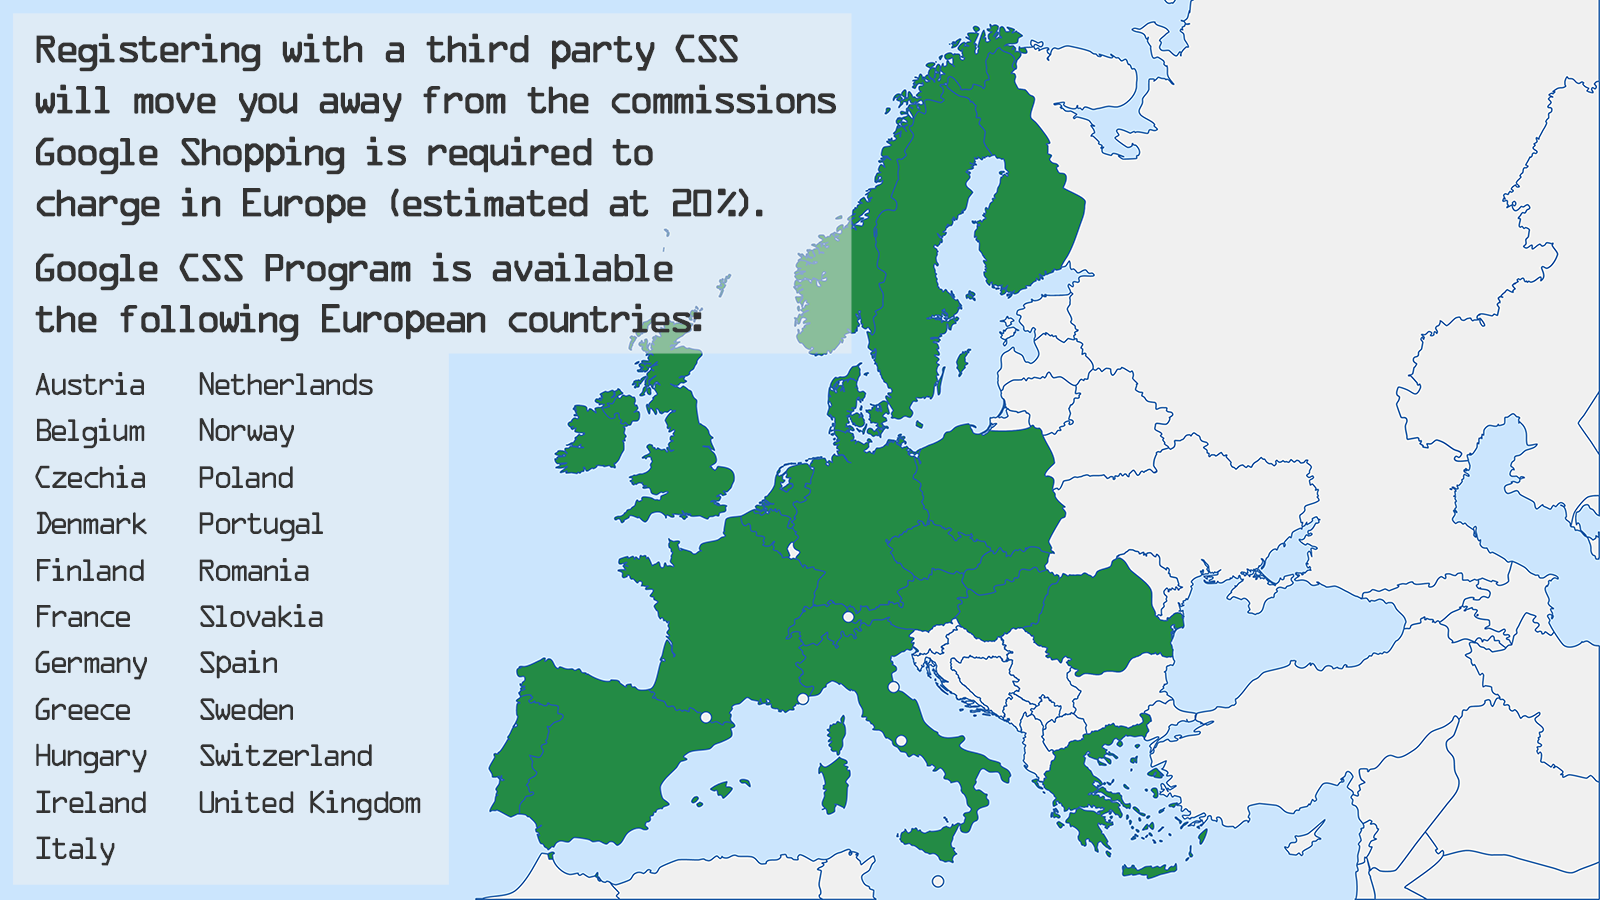 Google CSS Programm ist in 21 europäischen Ländern verfügbar